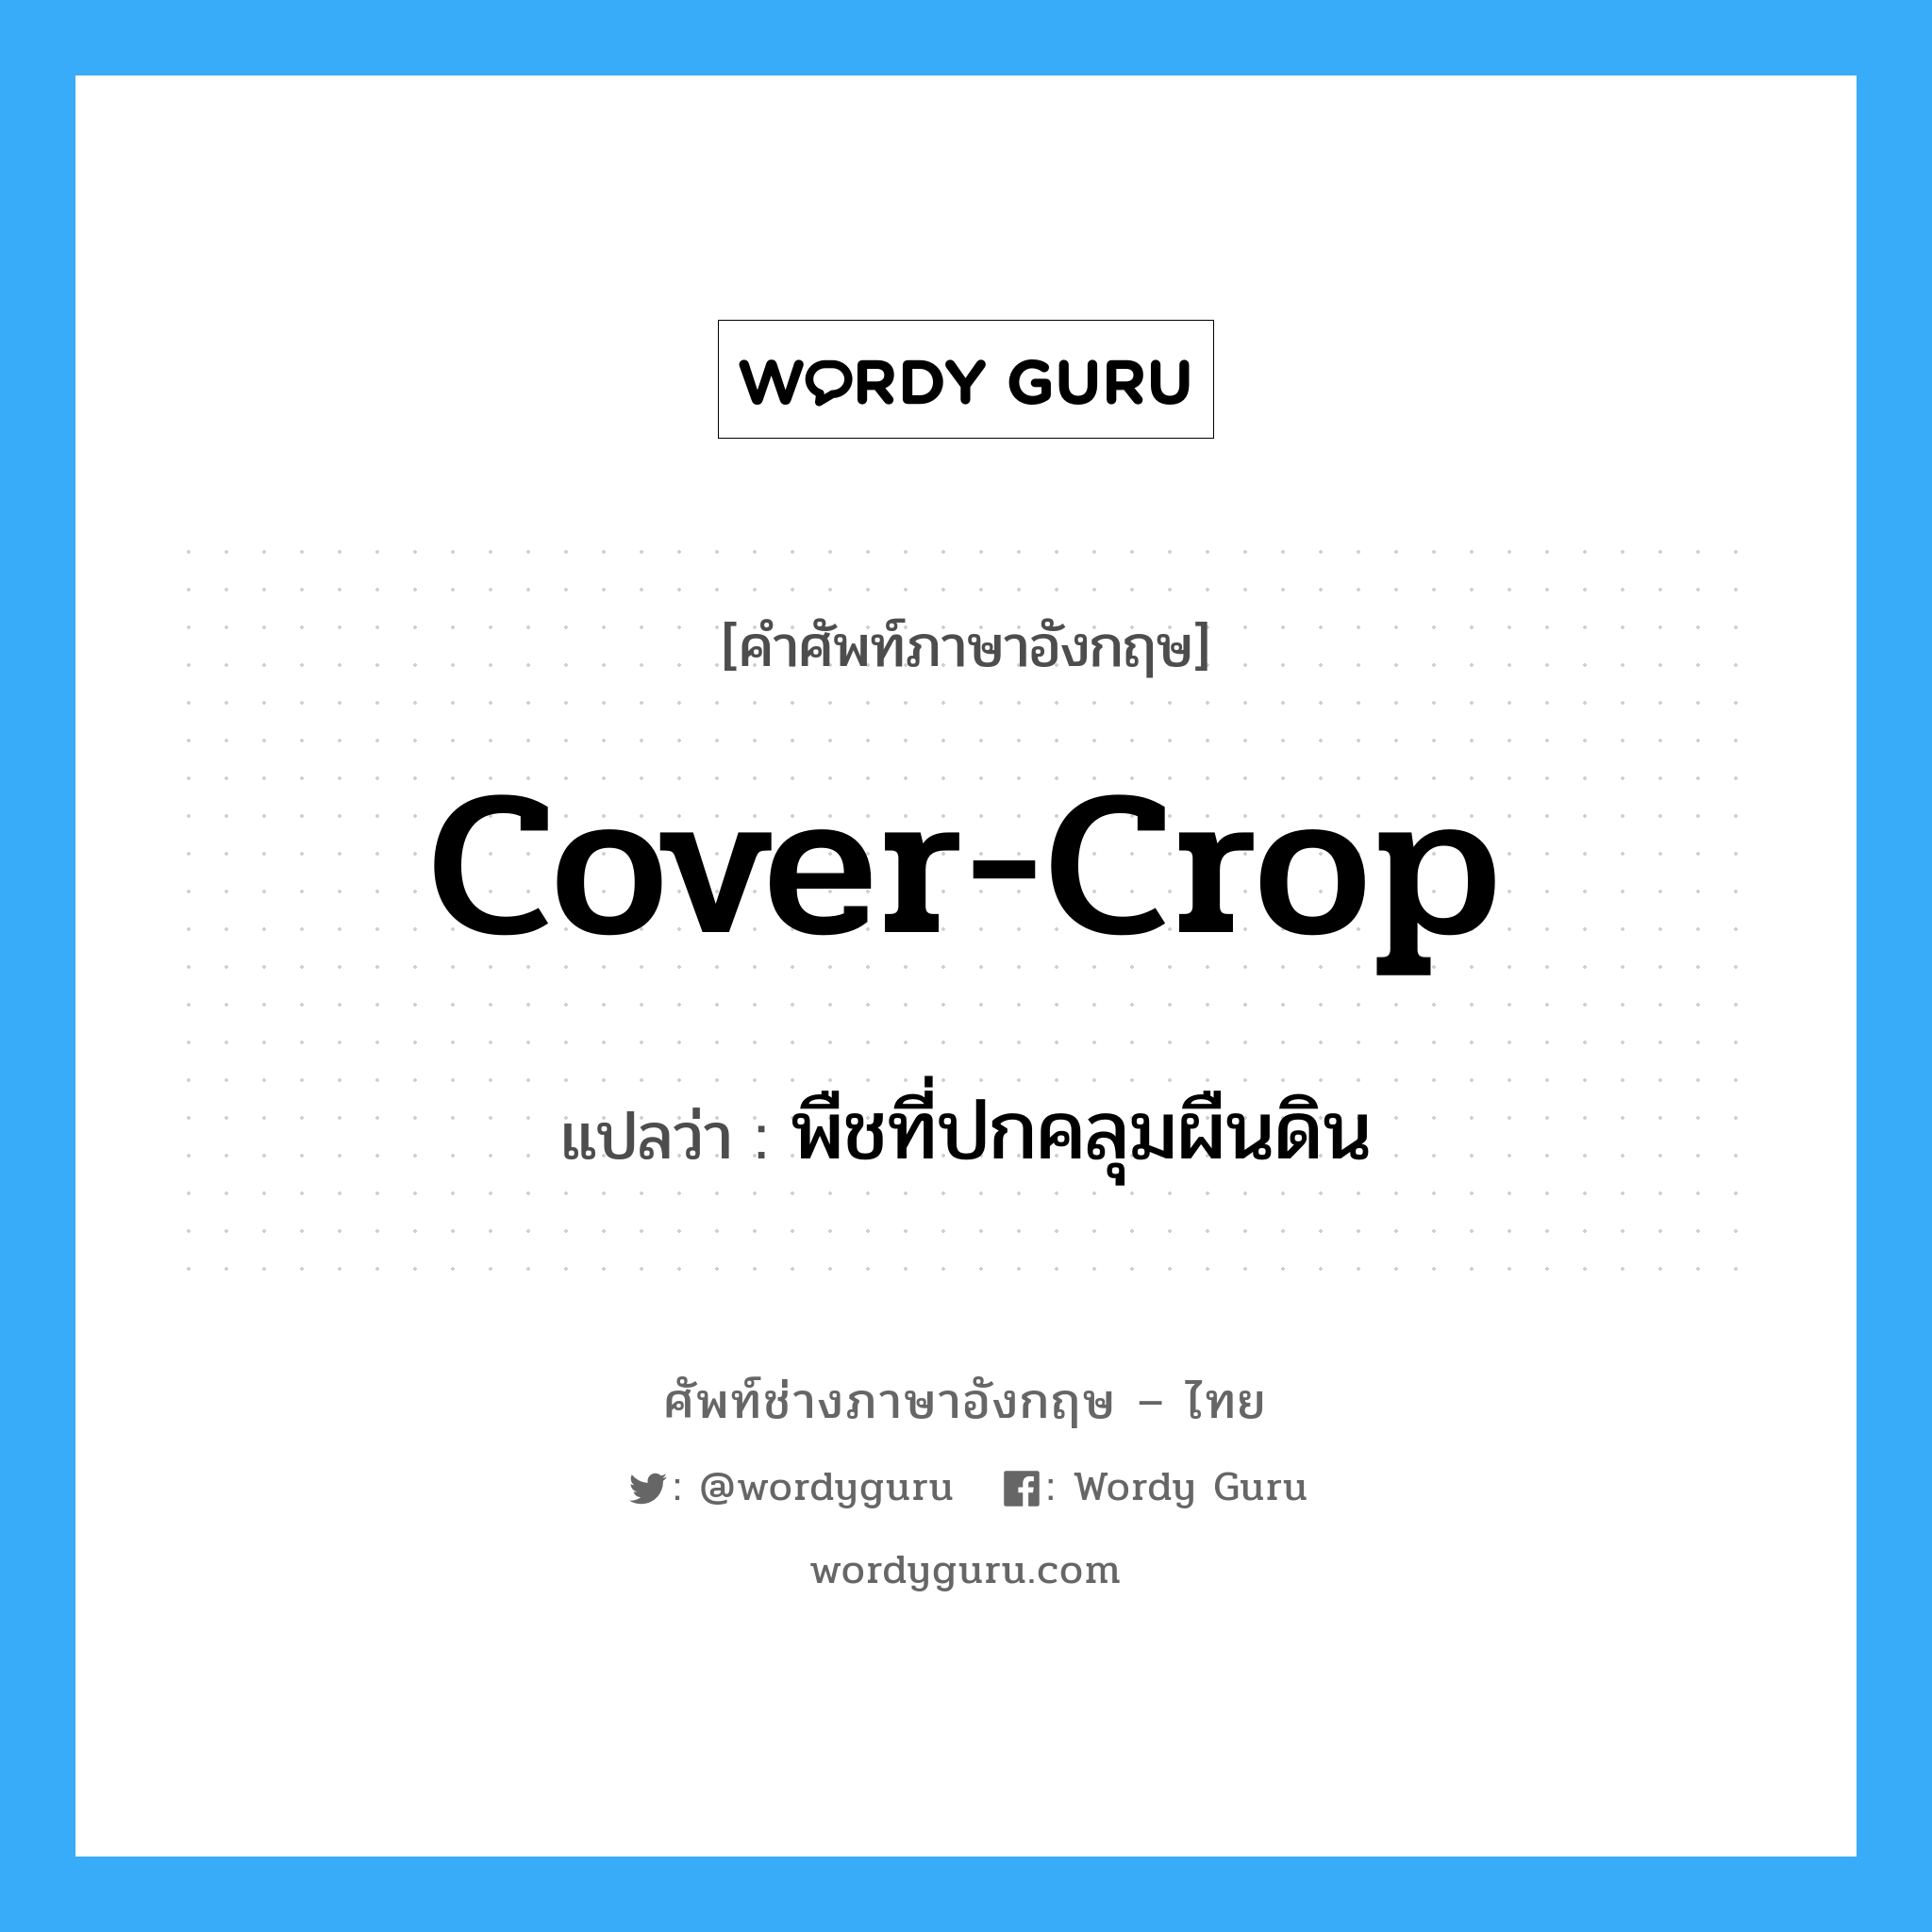 cover-crop แปลว่า?, คำศัพท์ช่างภาษาอังกฤษ - ไทย cover-crop คำศัพท์ภาษาอังกฤษ cover-crop แปลว่า พืชที่ปกคลุมผืนดิน